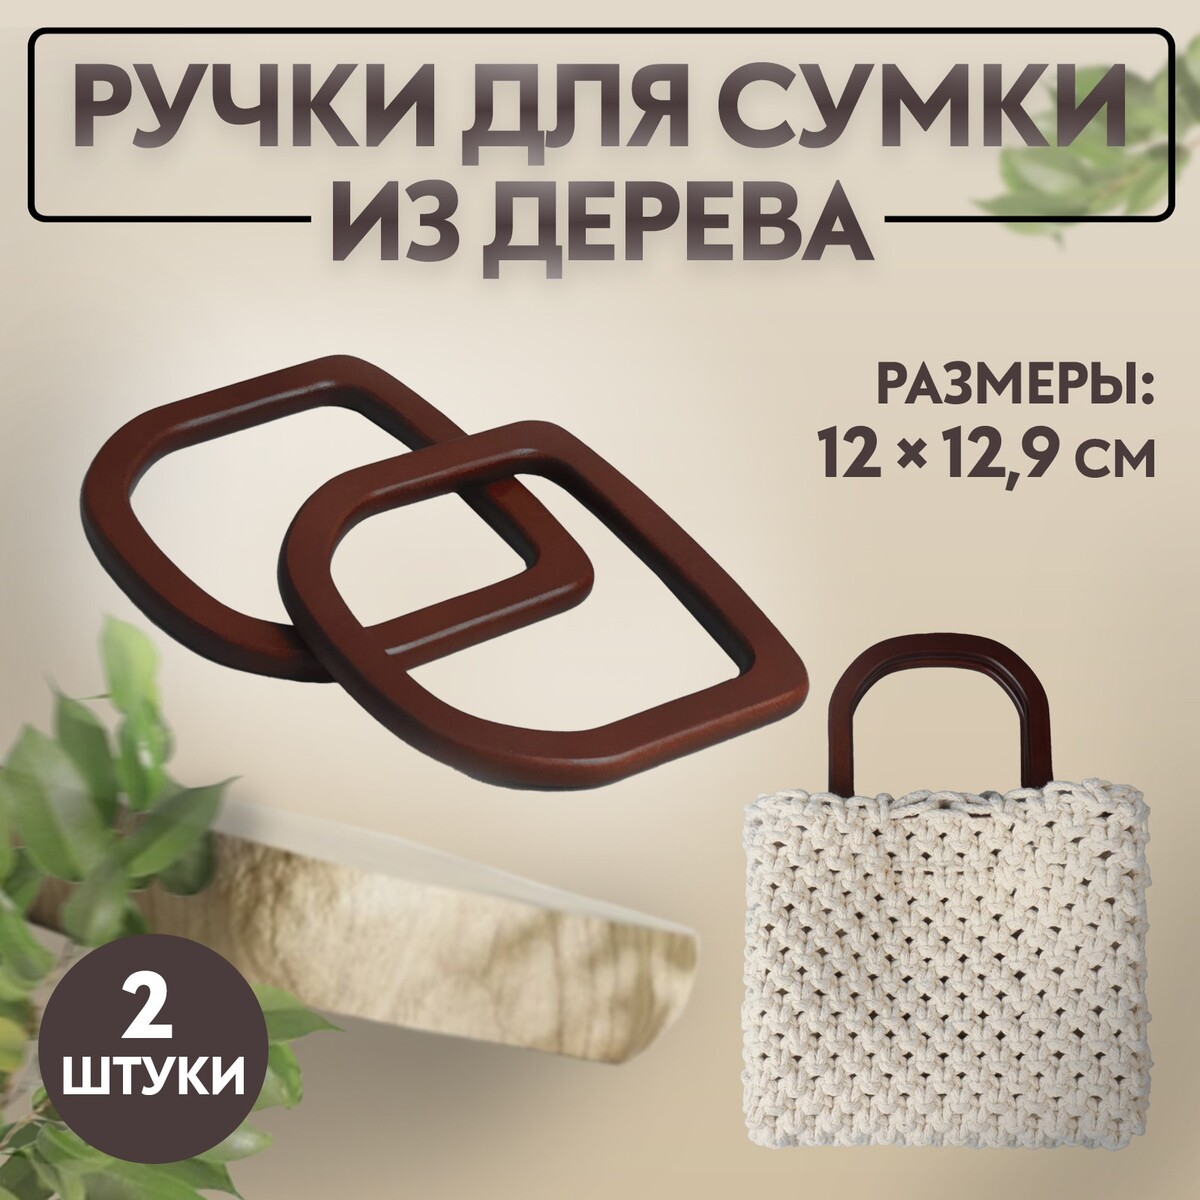 Ручки для сумки деревянные, 12 × 12,9 см, 2 шт, цвет коричневый ручки для сумки деревянные 10 × 18 см 2 шт коричневый